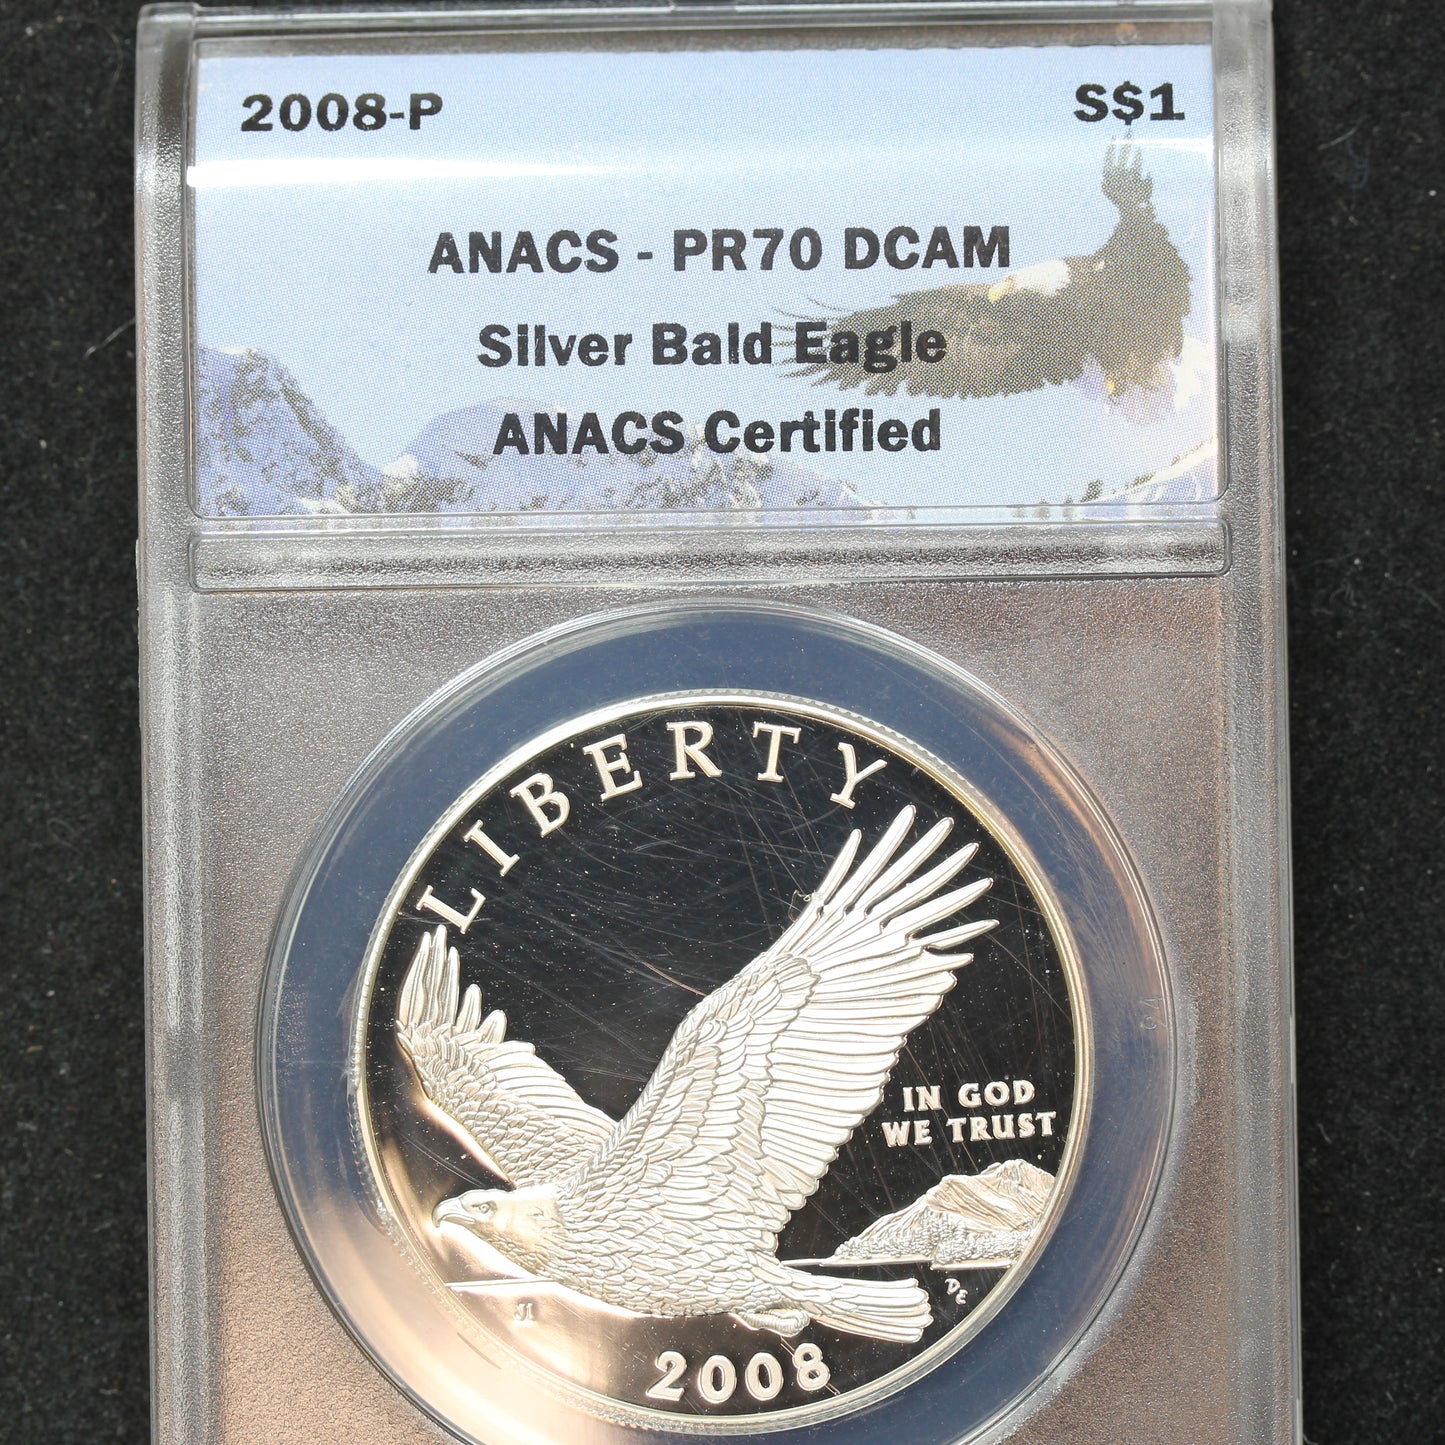 2008 P Proof Silver Bald Eagle $1 Silver Commem - ANACS PR70 DCAM